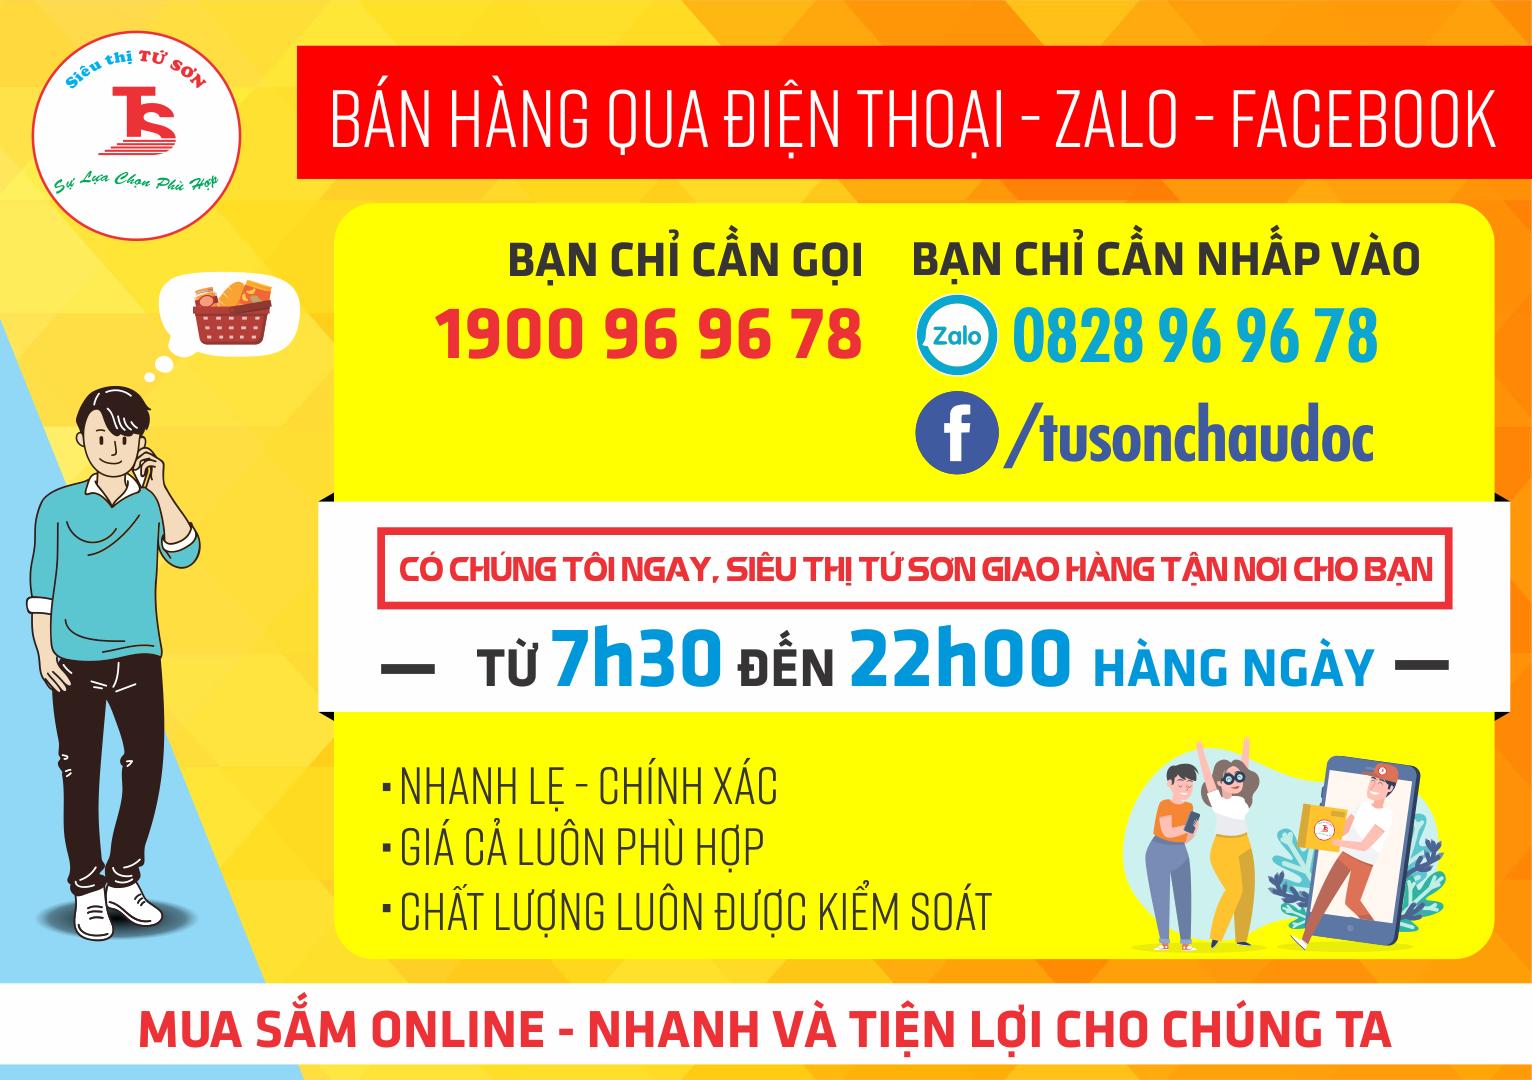 Siêu thị Tứ Sơn bán hàng qua điện thoại zalo, facebook và giao hàng miễn phí